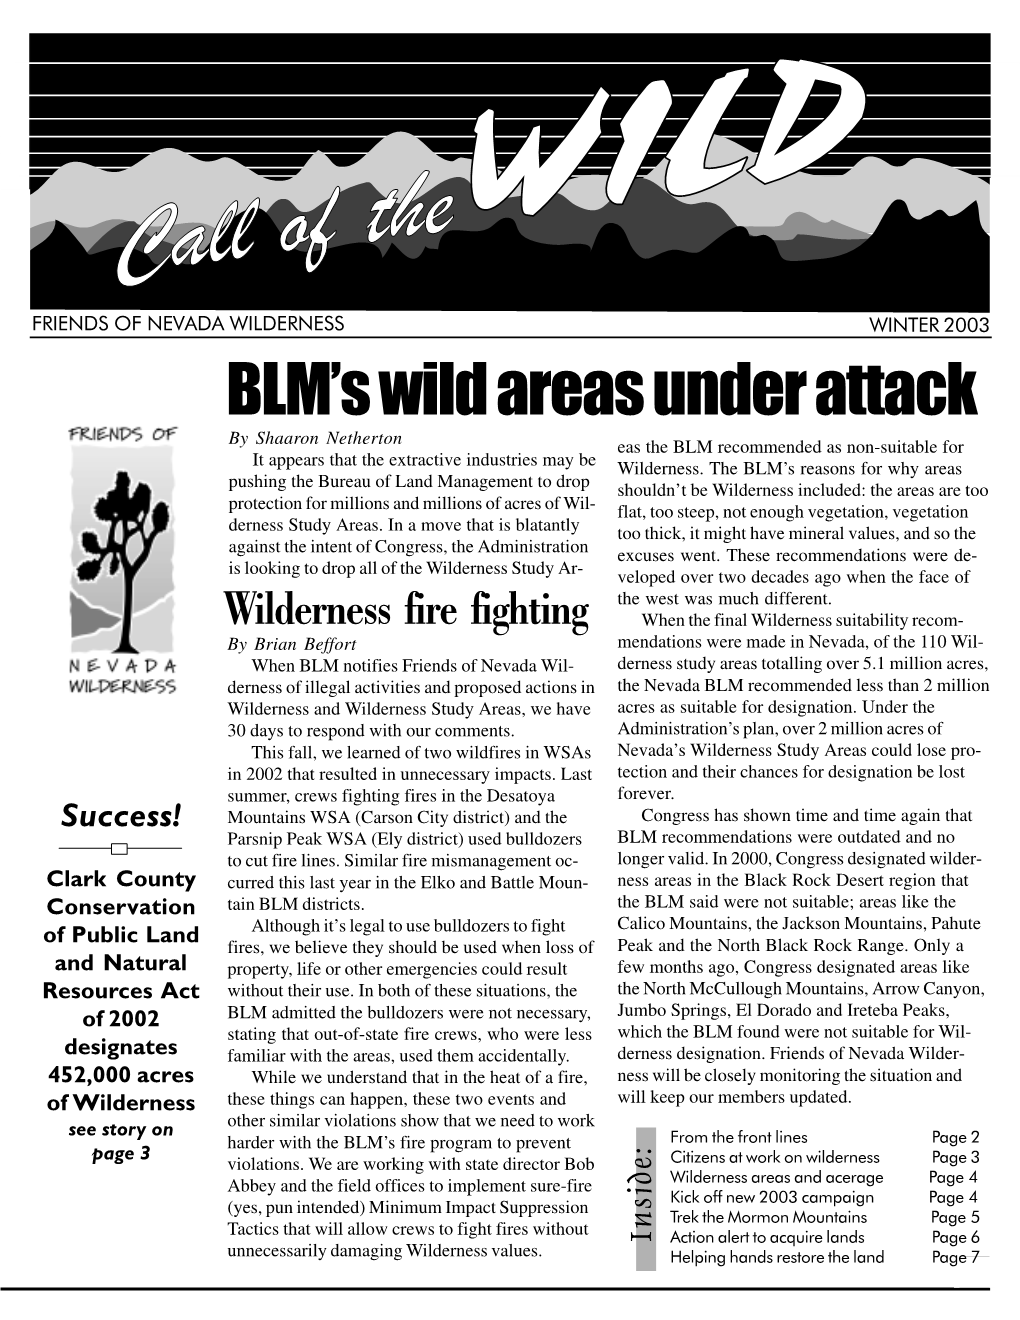 BLM's Wild Areas Under Attack